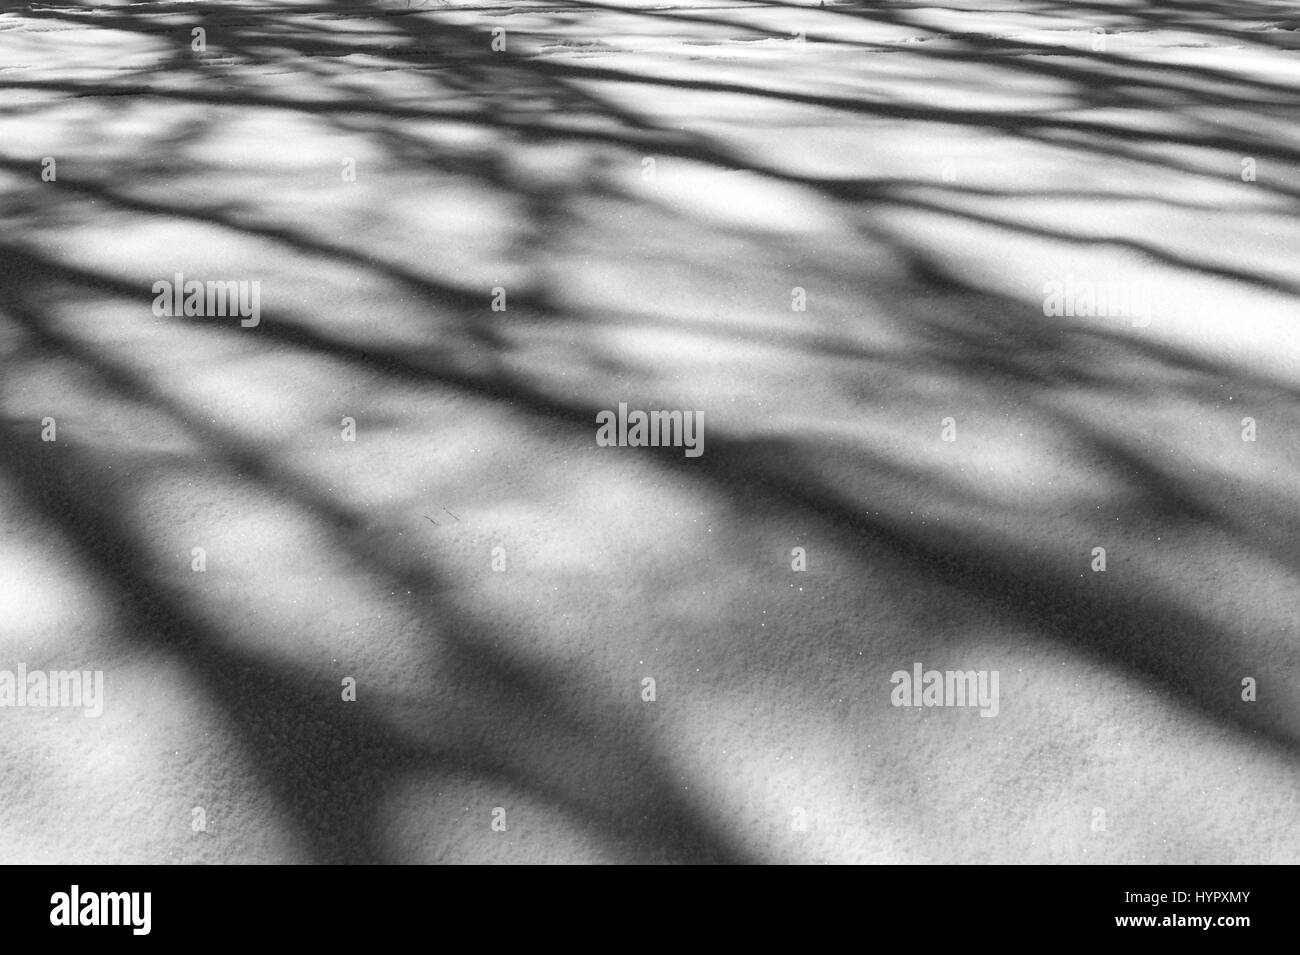 Black & White immagine di alberi che creano astratti modelli di ombra sulla neve fresca Foto Stock